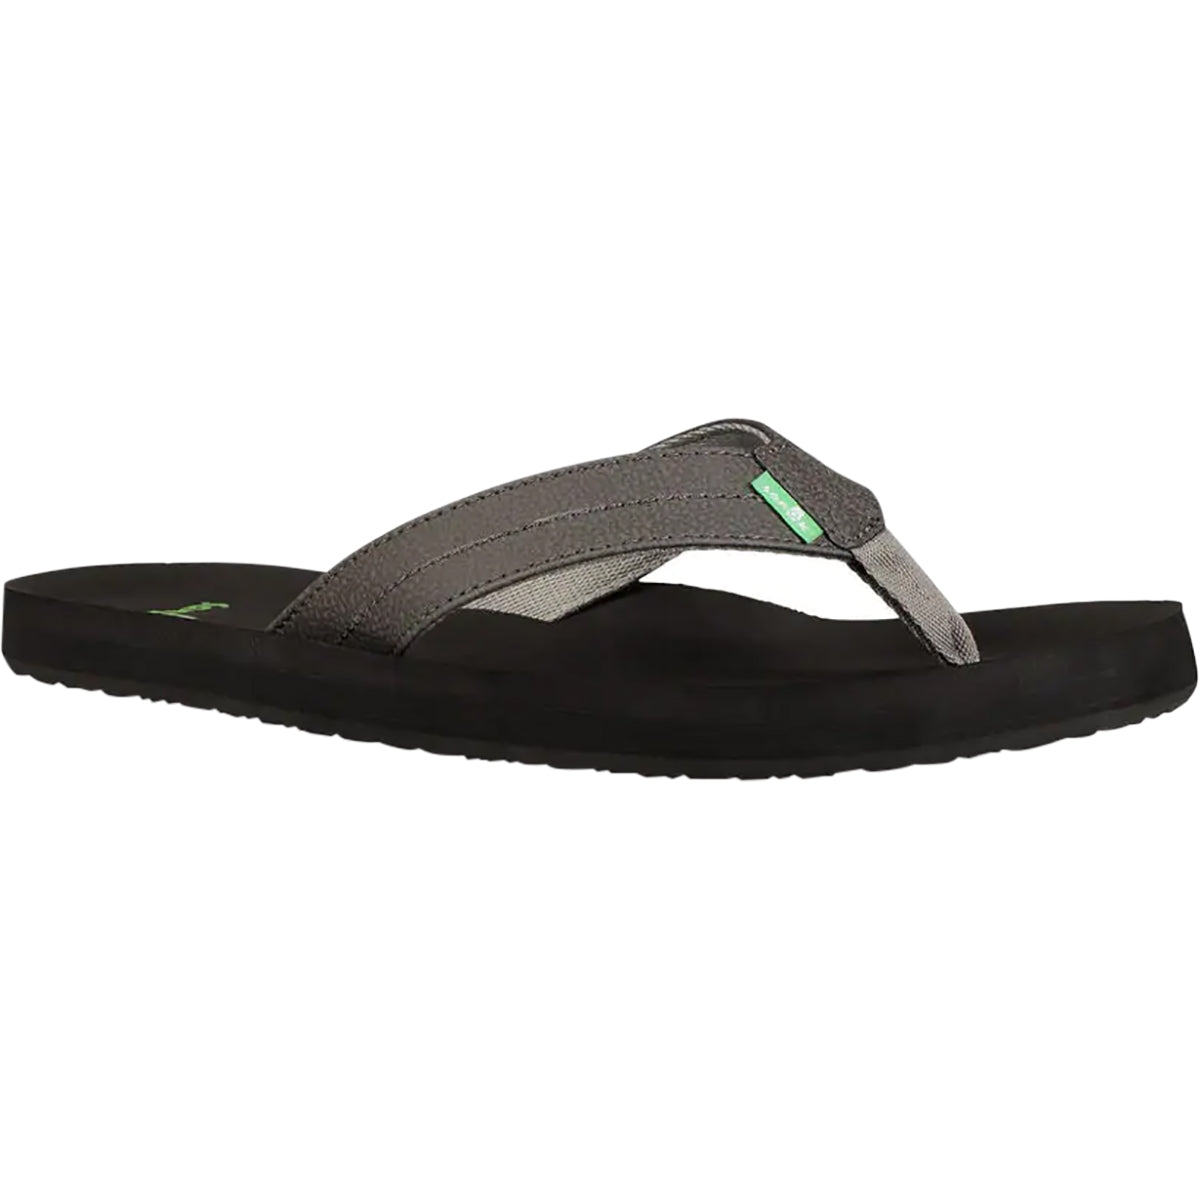 Sanuk Burm Men's Sandal Footwear (Brand New) – OriginBoardshop